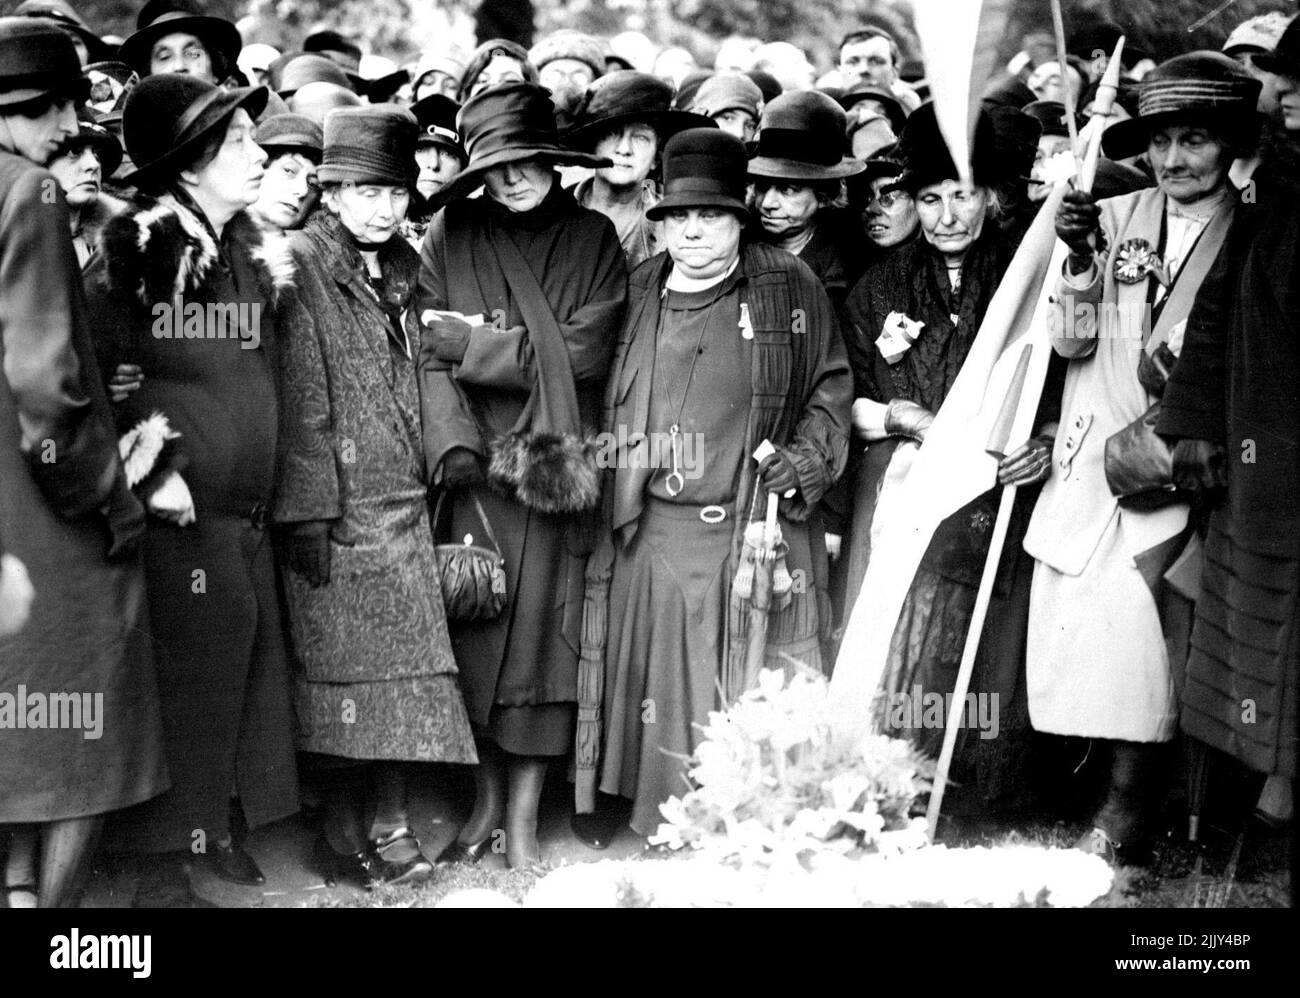 Funeral de la Sra. Pankhurst. Srta. Christabel Oankhurst, Sra. Lrummond, y otros surfragistas prominentes en la tumba. El servicio funerario de la Sra. pankhurst tuvo lugar en la Iglesia de San Juan, Westminster. Las mujeres que participaron en el movimiento militante siguieron el cortejo hasta el cementerio de brompton. Nueve ex-militantes sufragantes, todos los cuales fueron encarcelados, actuaron como paladines. 01 de julio de 1928. (Foto de Central News). Foto de stock